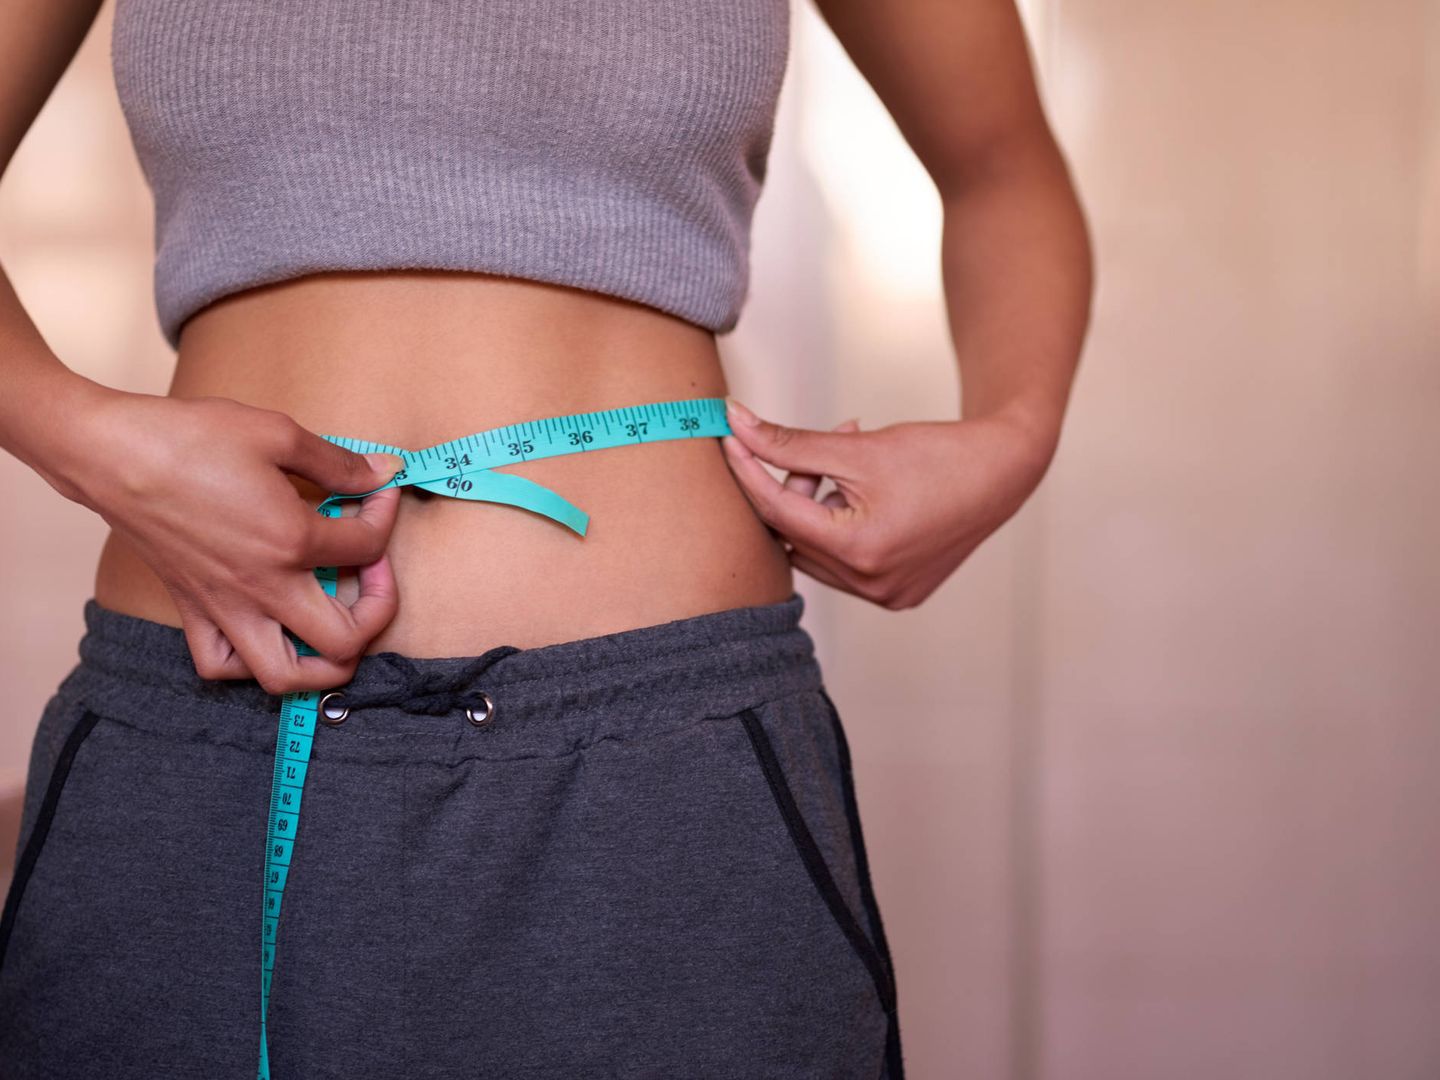 Perder peso de forma saludable es posible siguiendo estos consejos